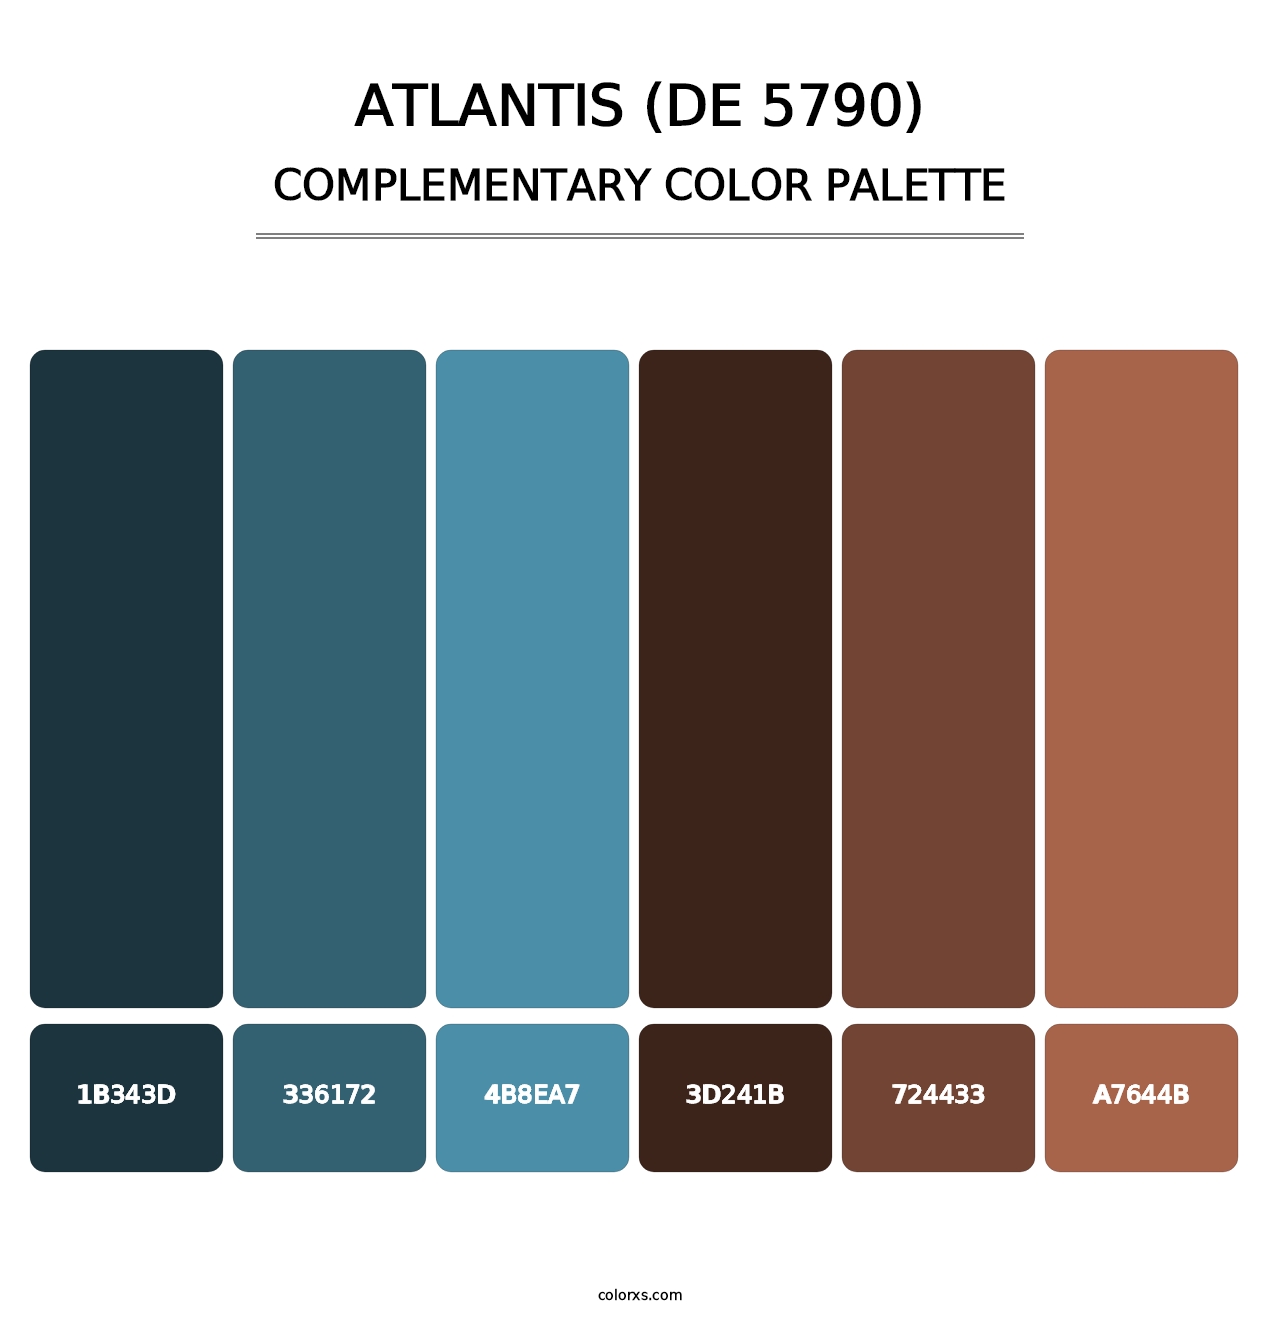 Atlantis (DE 5790) - Complementary Color Palette